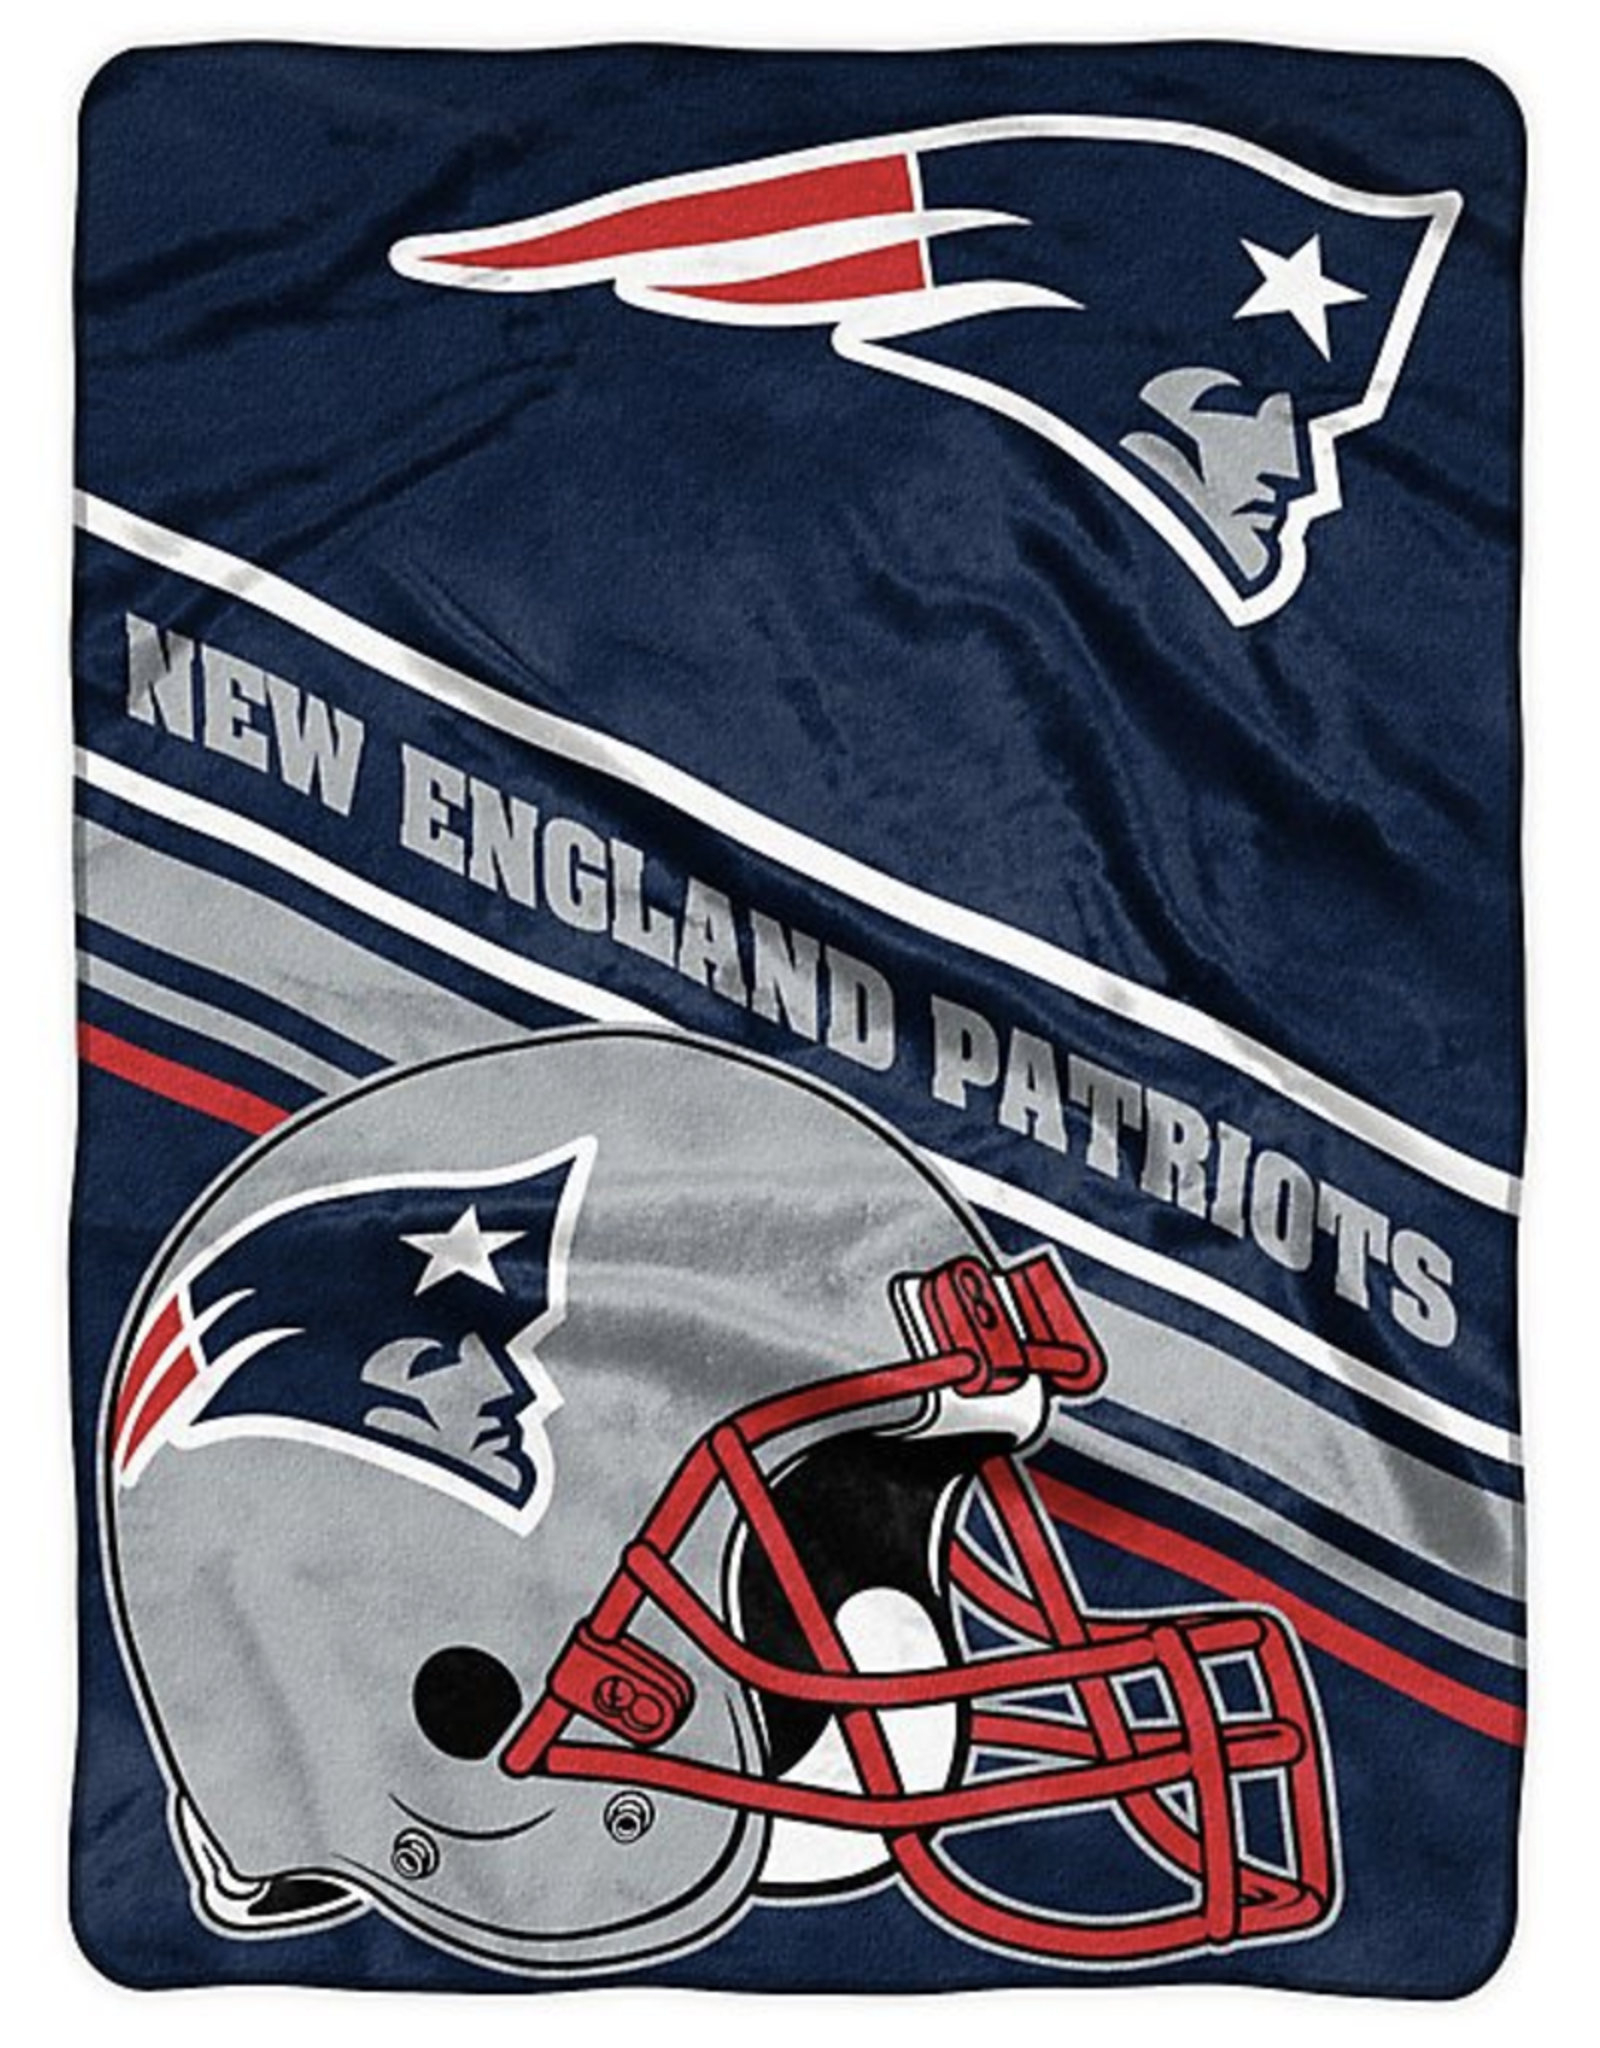 Northwest New England Patriots 60x80 Slant Royal Plush Blanket